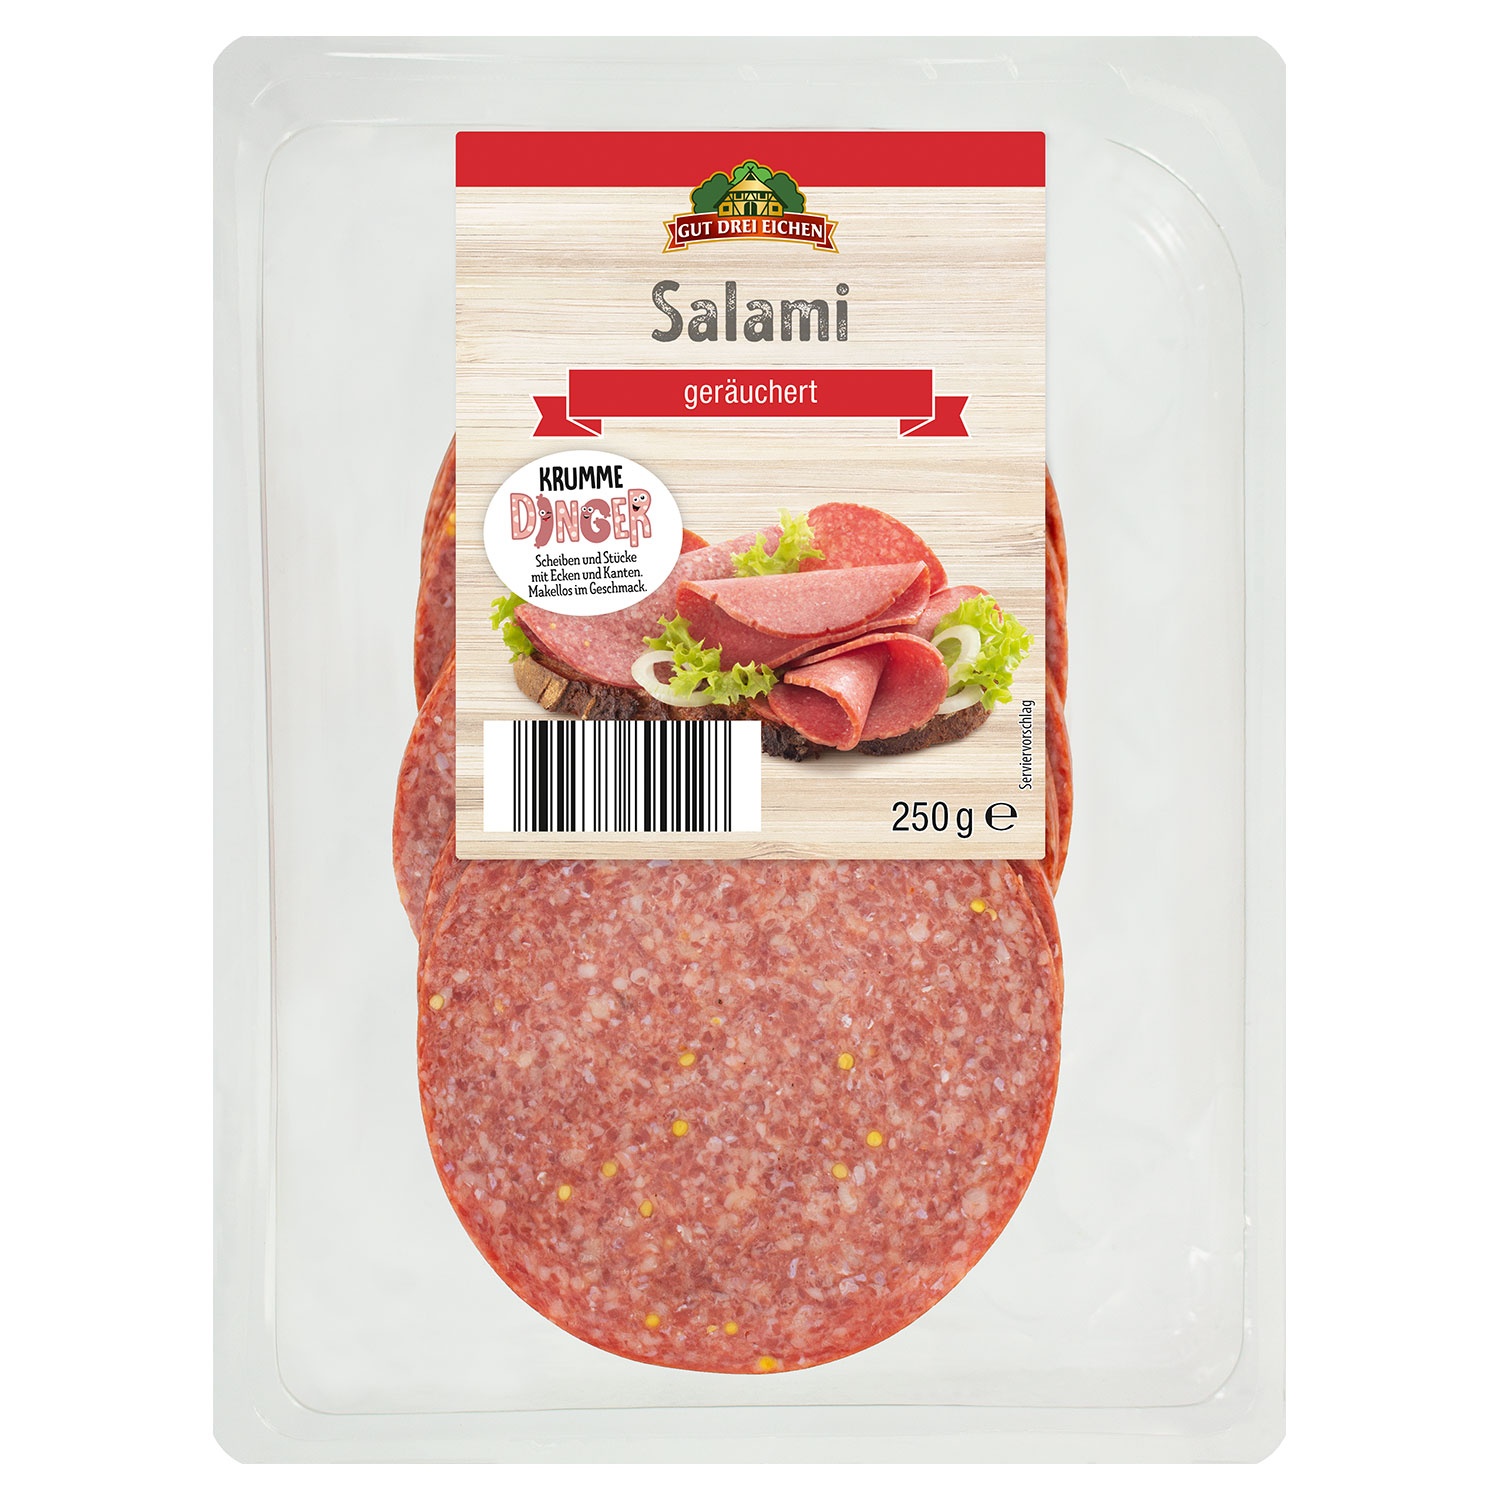 GUT DREI EICHEN Salami geräuchert 250 g